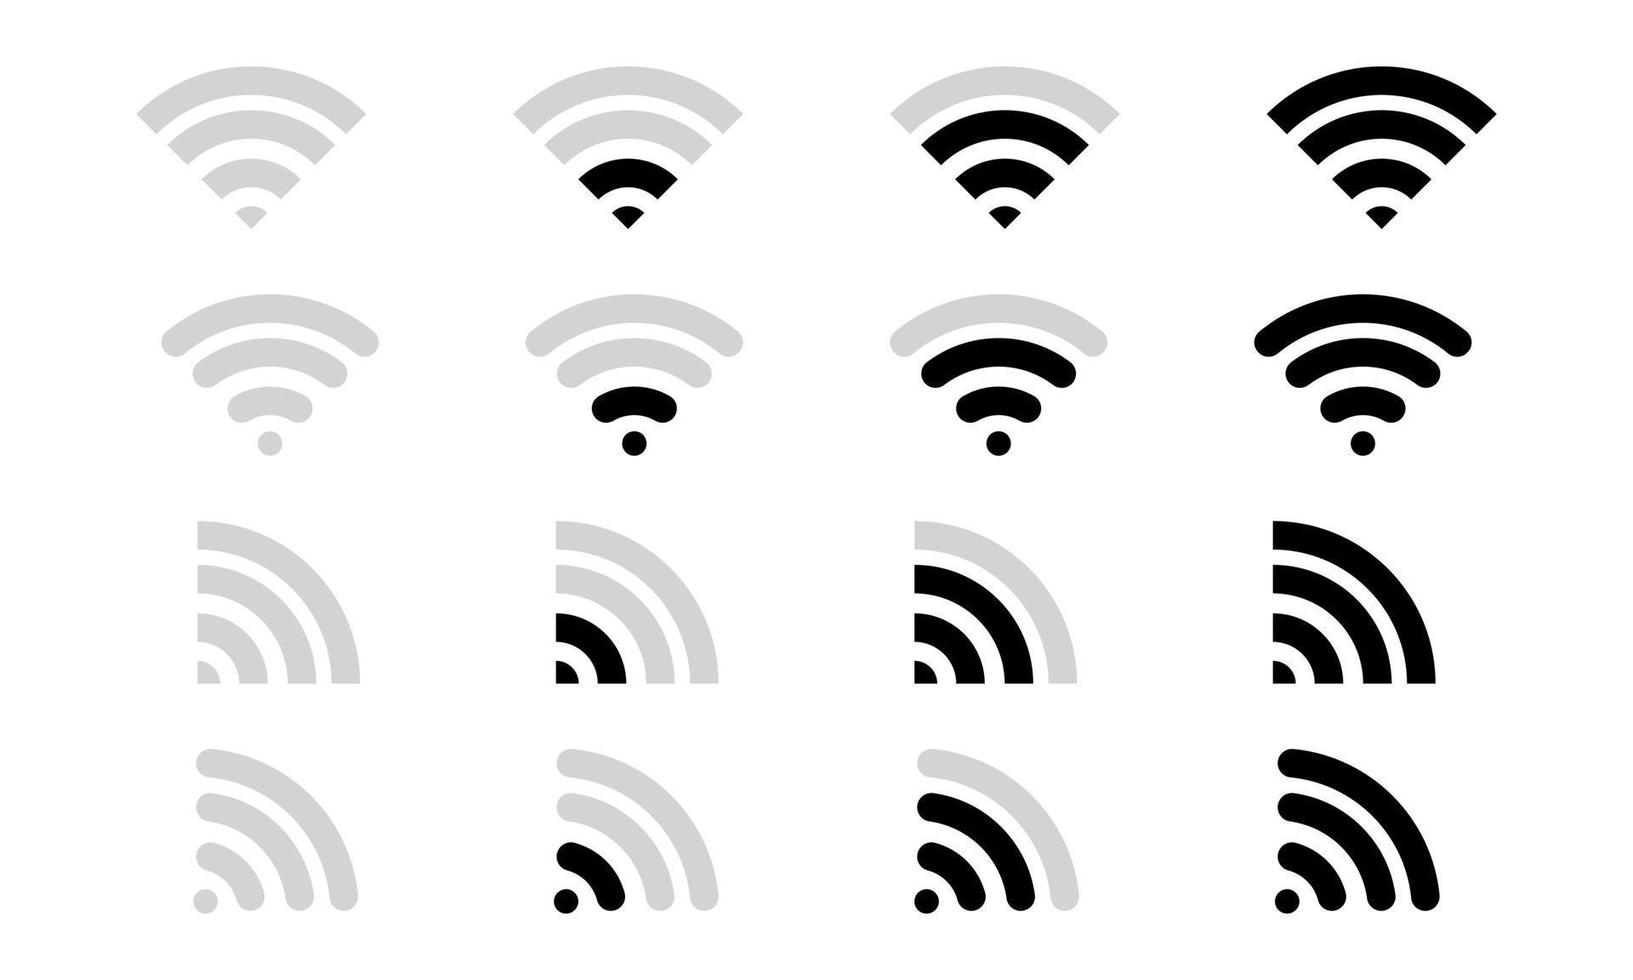 icone del segnale wifi varie forme. comunicazione, connessione, internet, wireless vettore